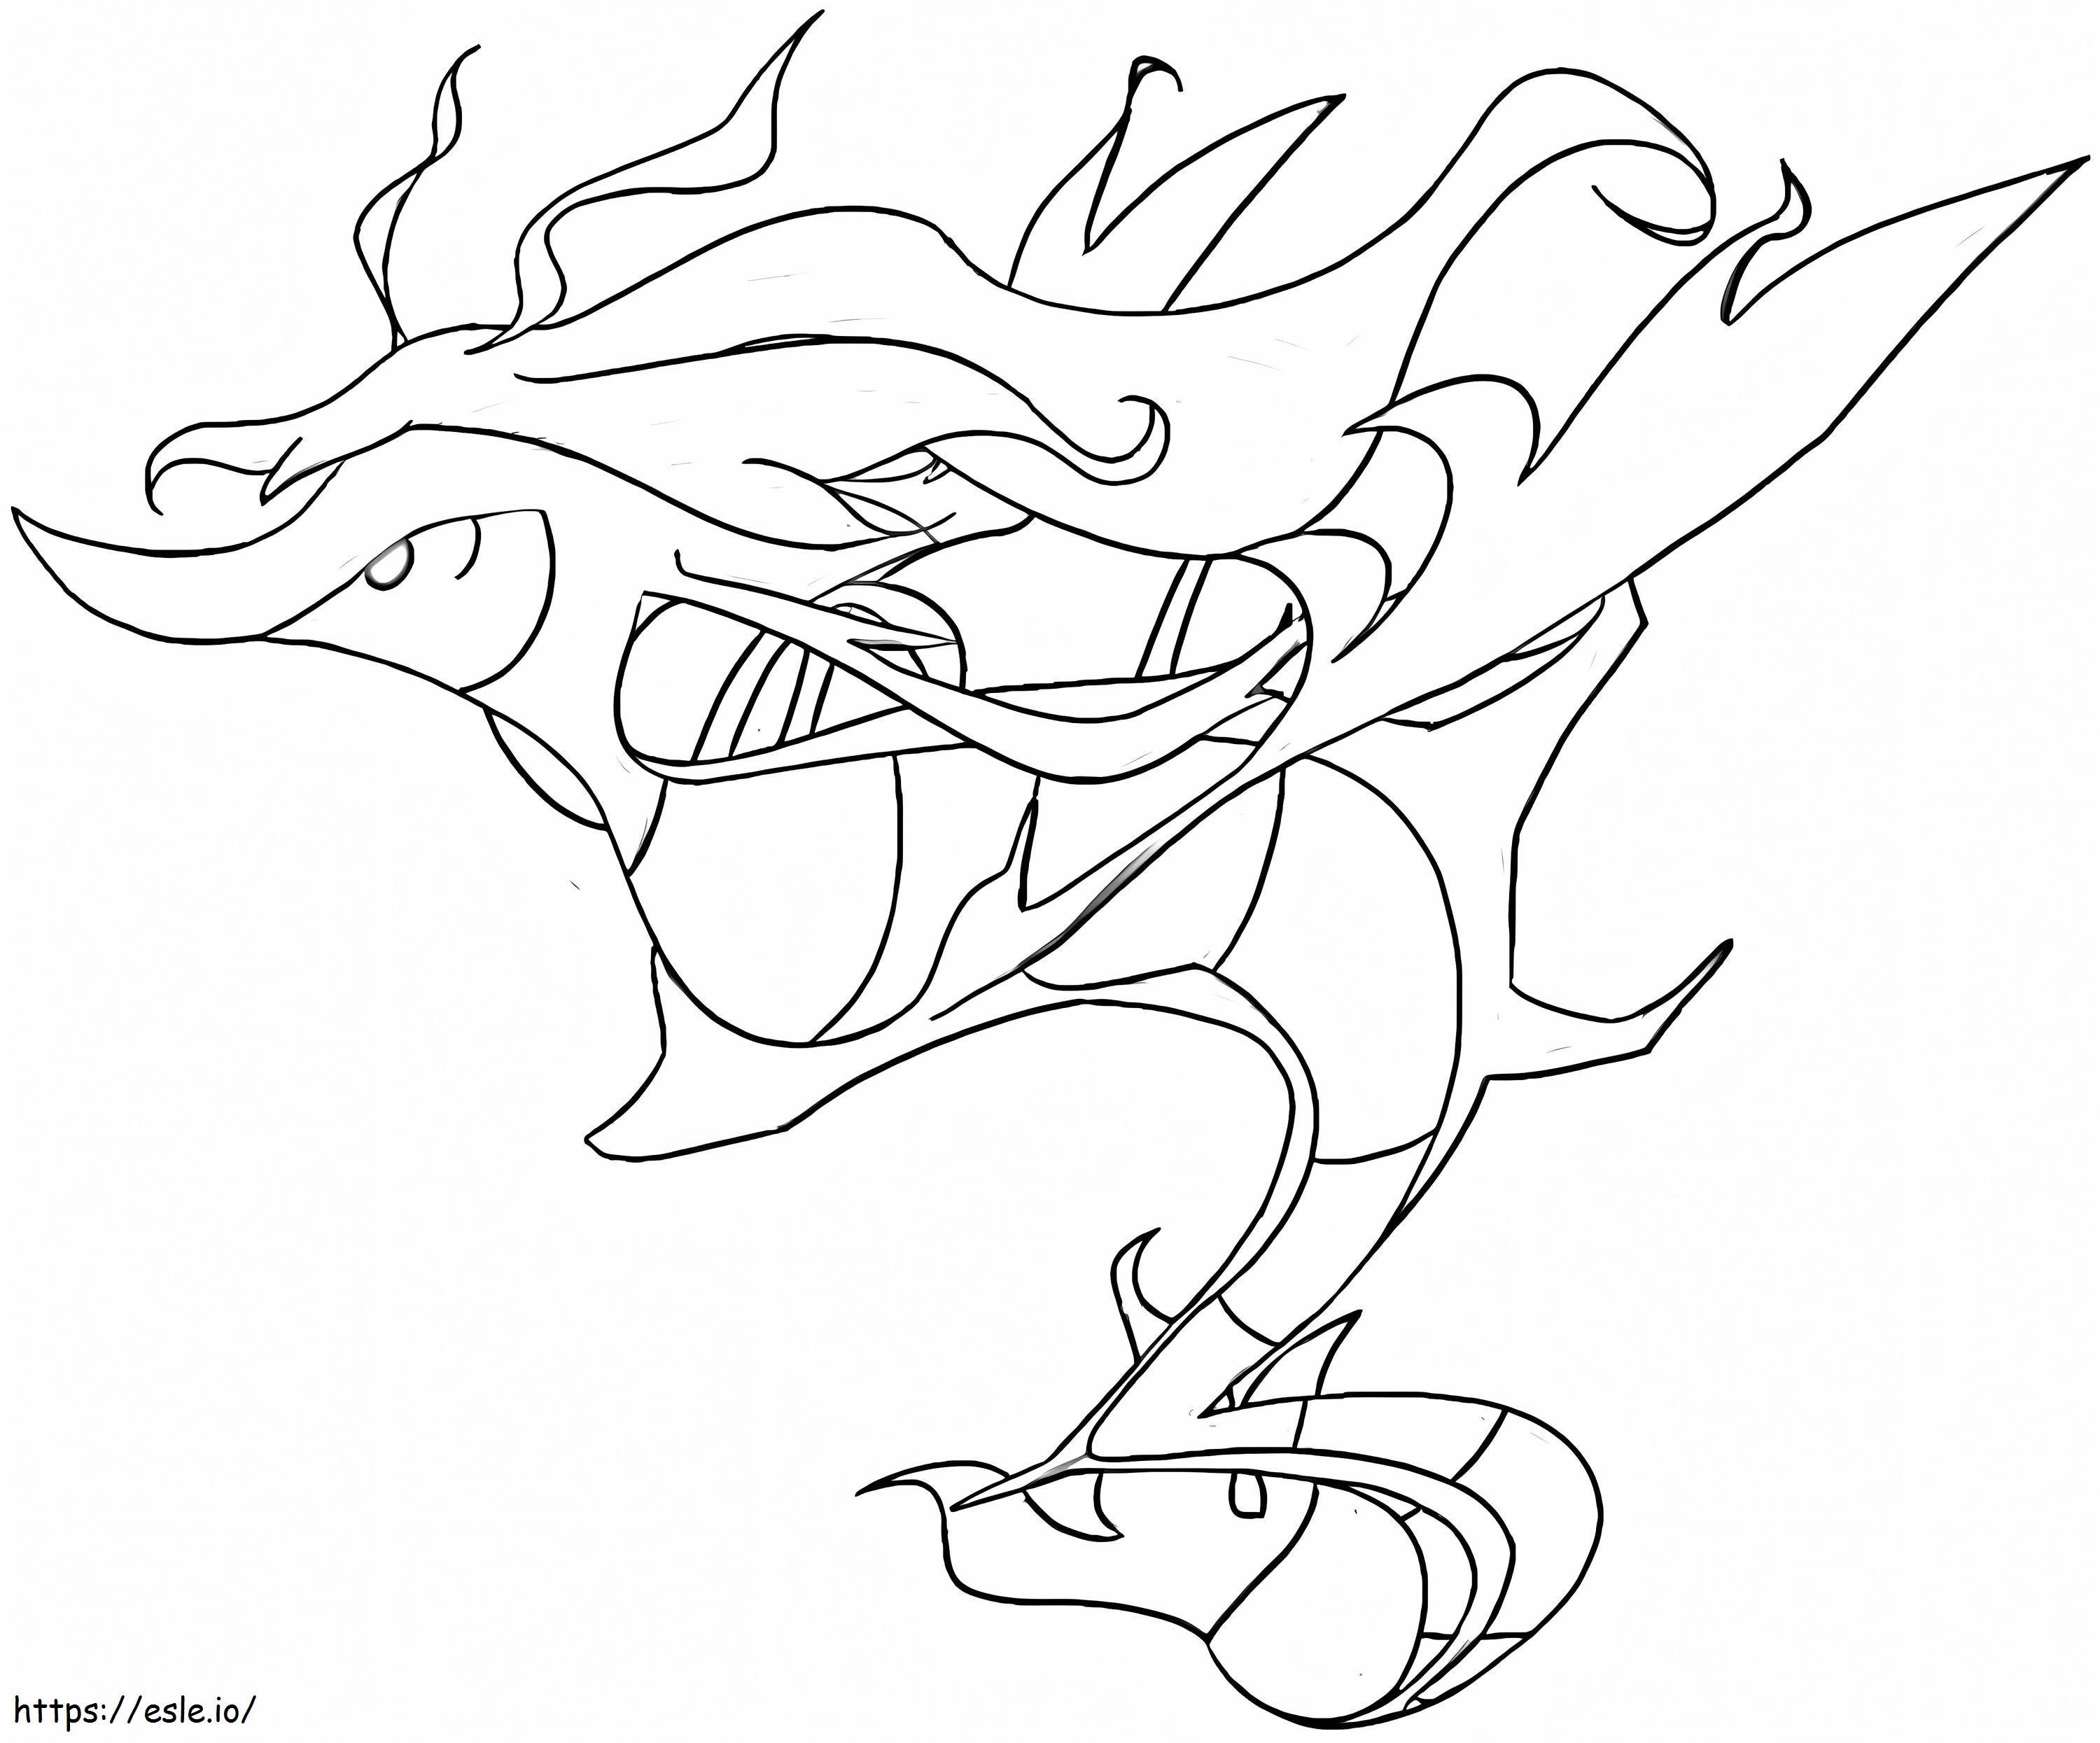 Coloriage Draggale Pokemon 3 à imprimer dessin